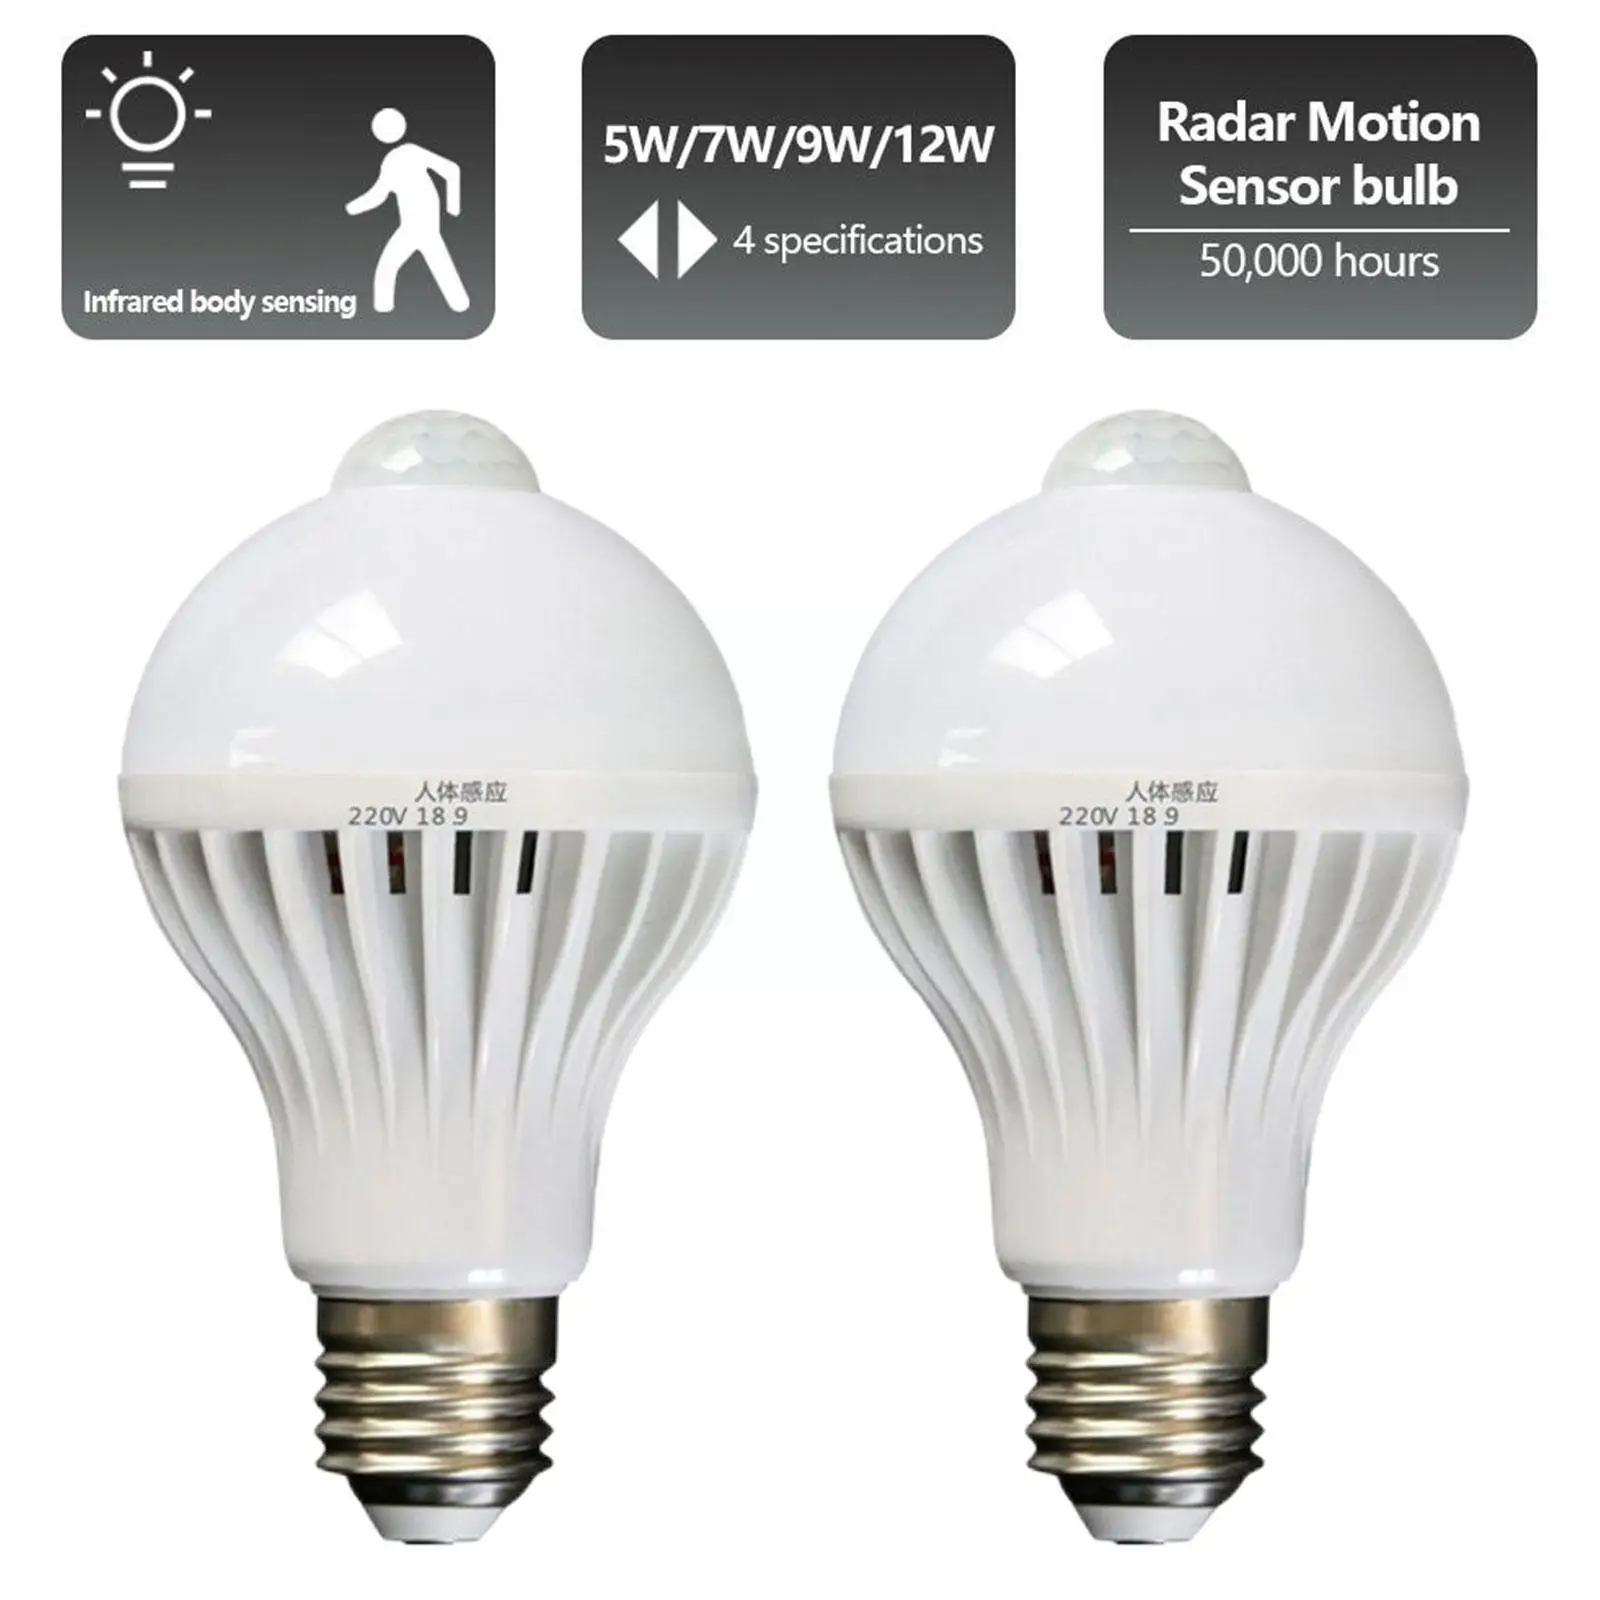 

PIR Motion Sensor LED Bulb E27 Lamp 5W 7W 12W 110V Night Light Lamps Hallway Induction Led Corridor 220V Bulb Stair Light T7S6